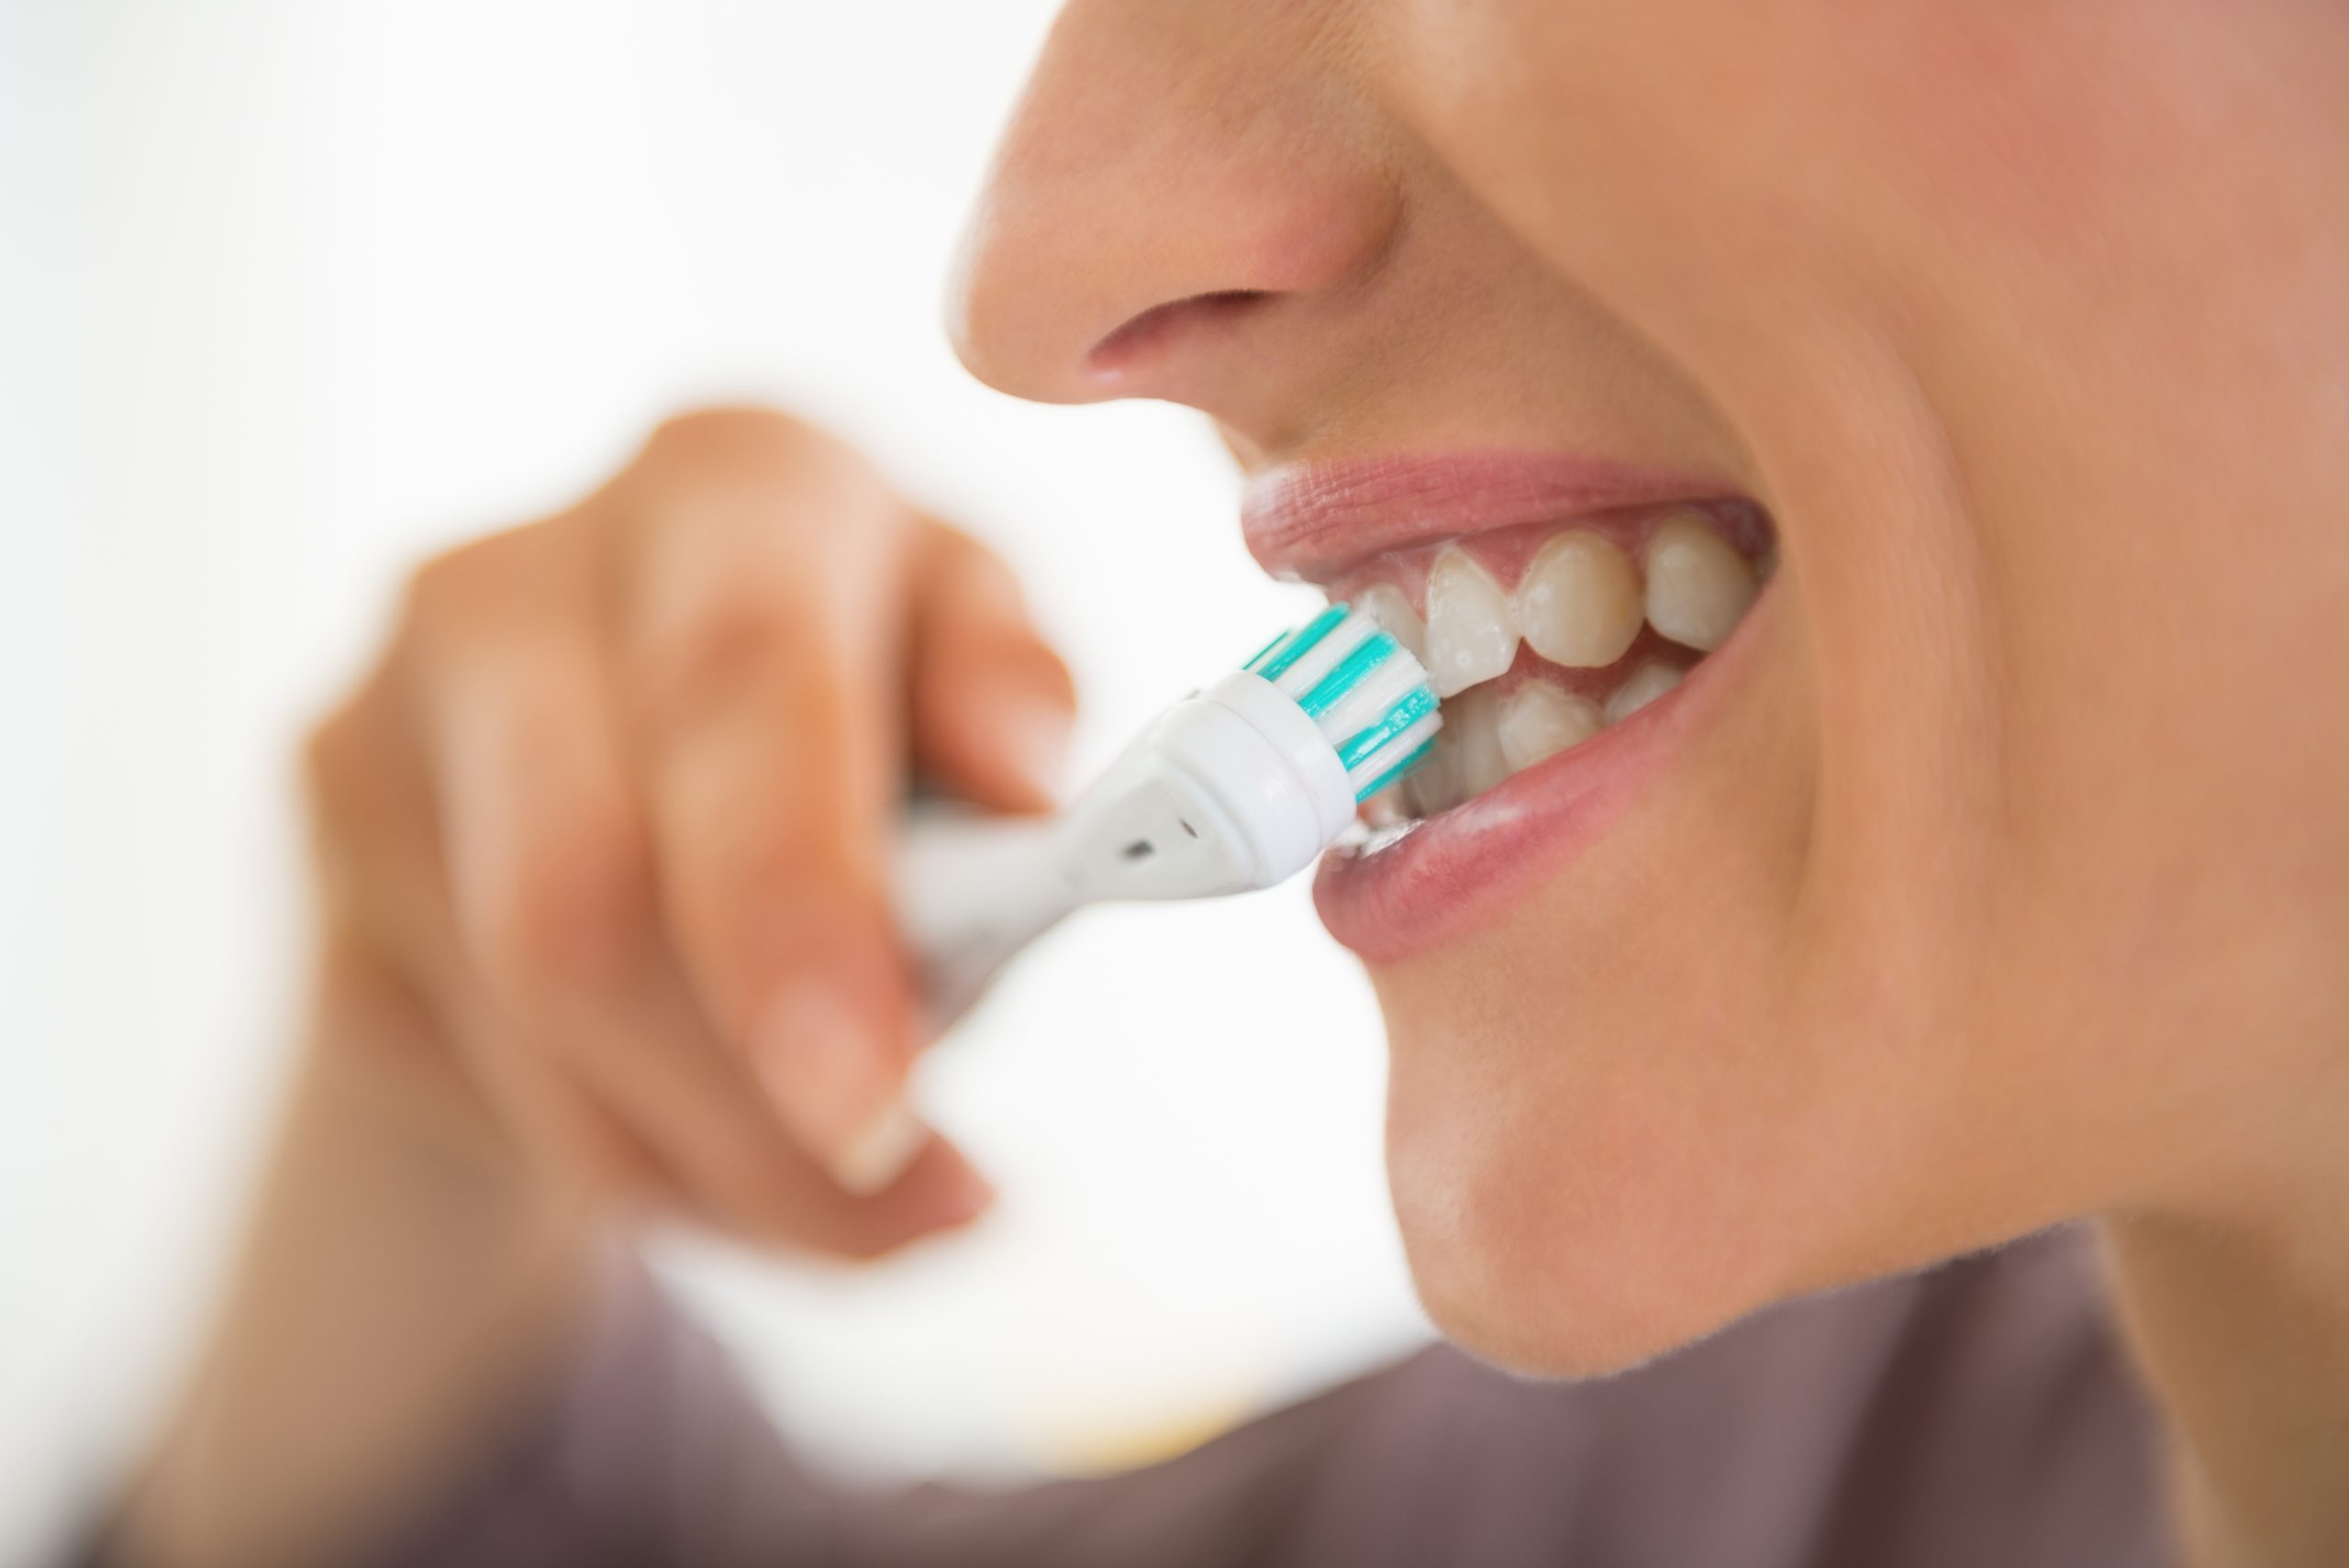 Birk, Nölting entkräften die 6 größten Zahnpflege-Mythen